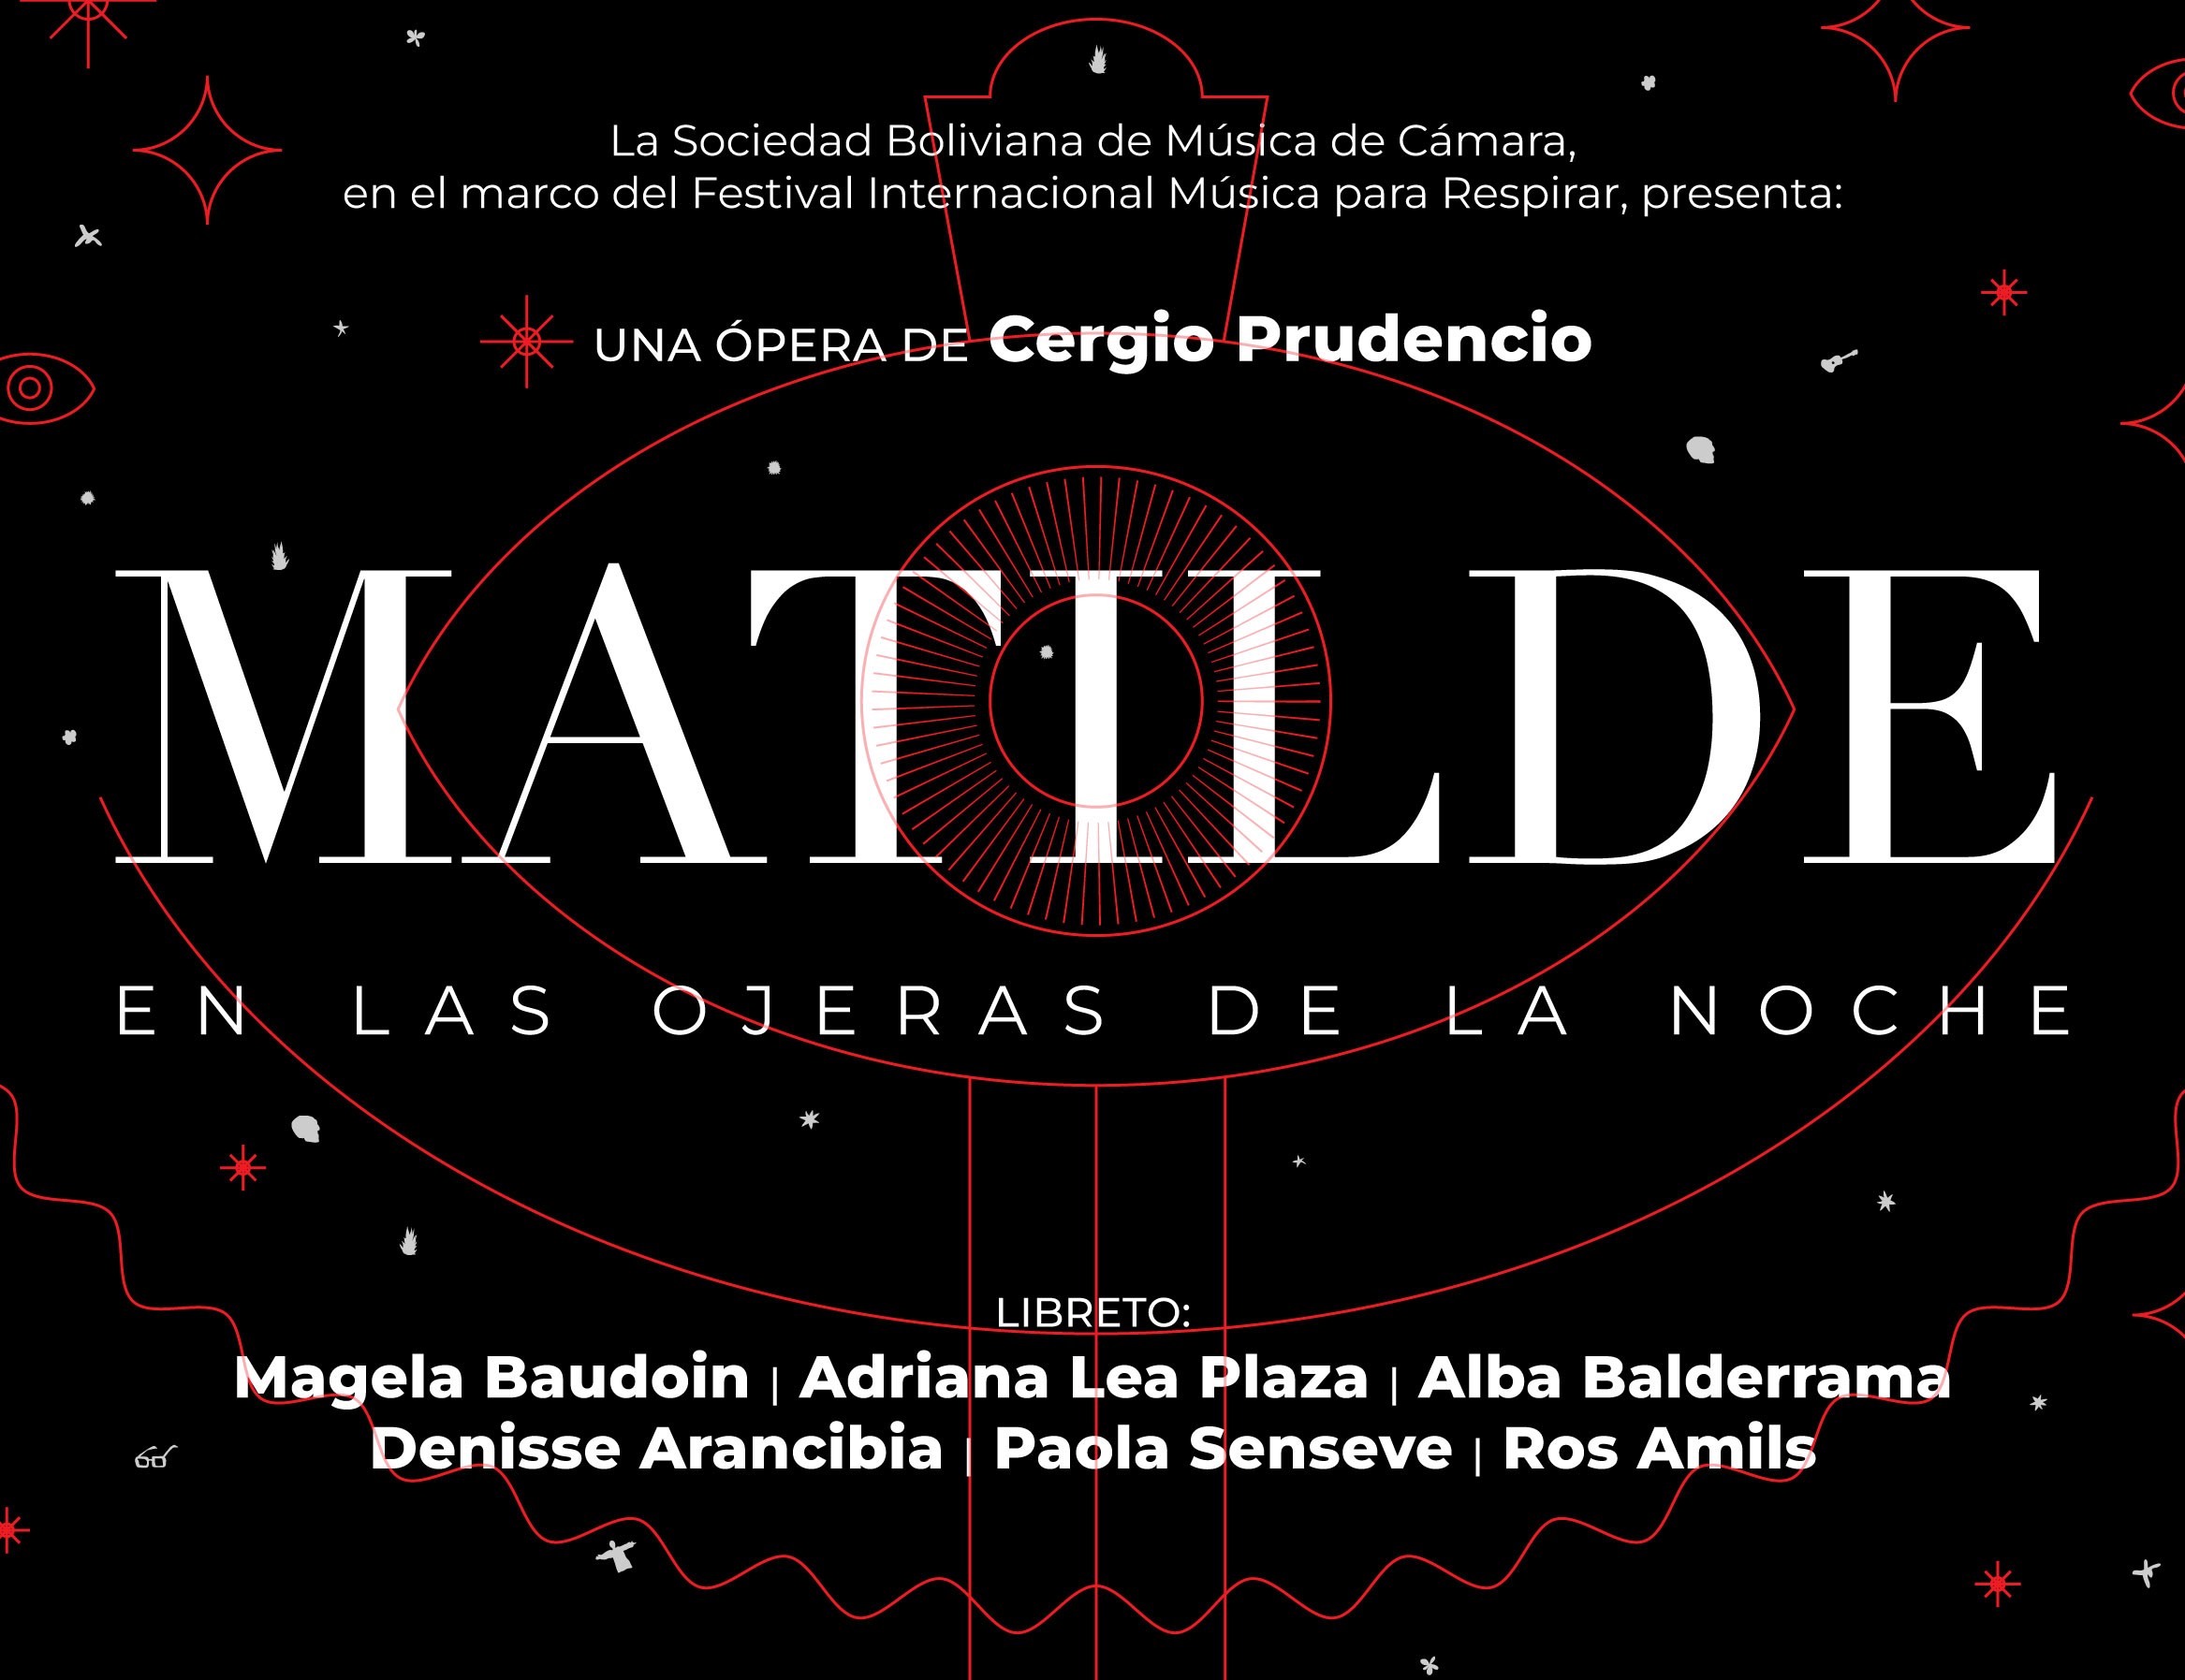 Matilde ópera afiche